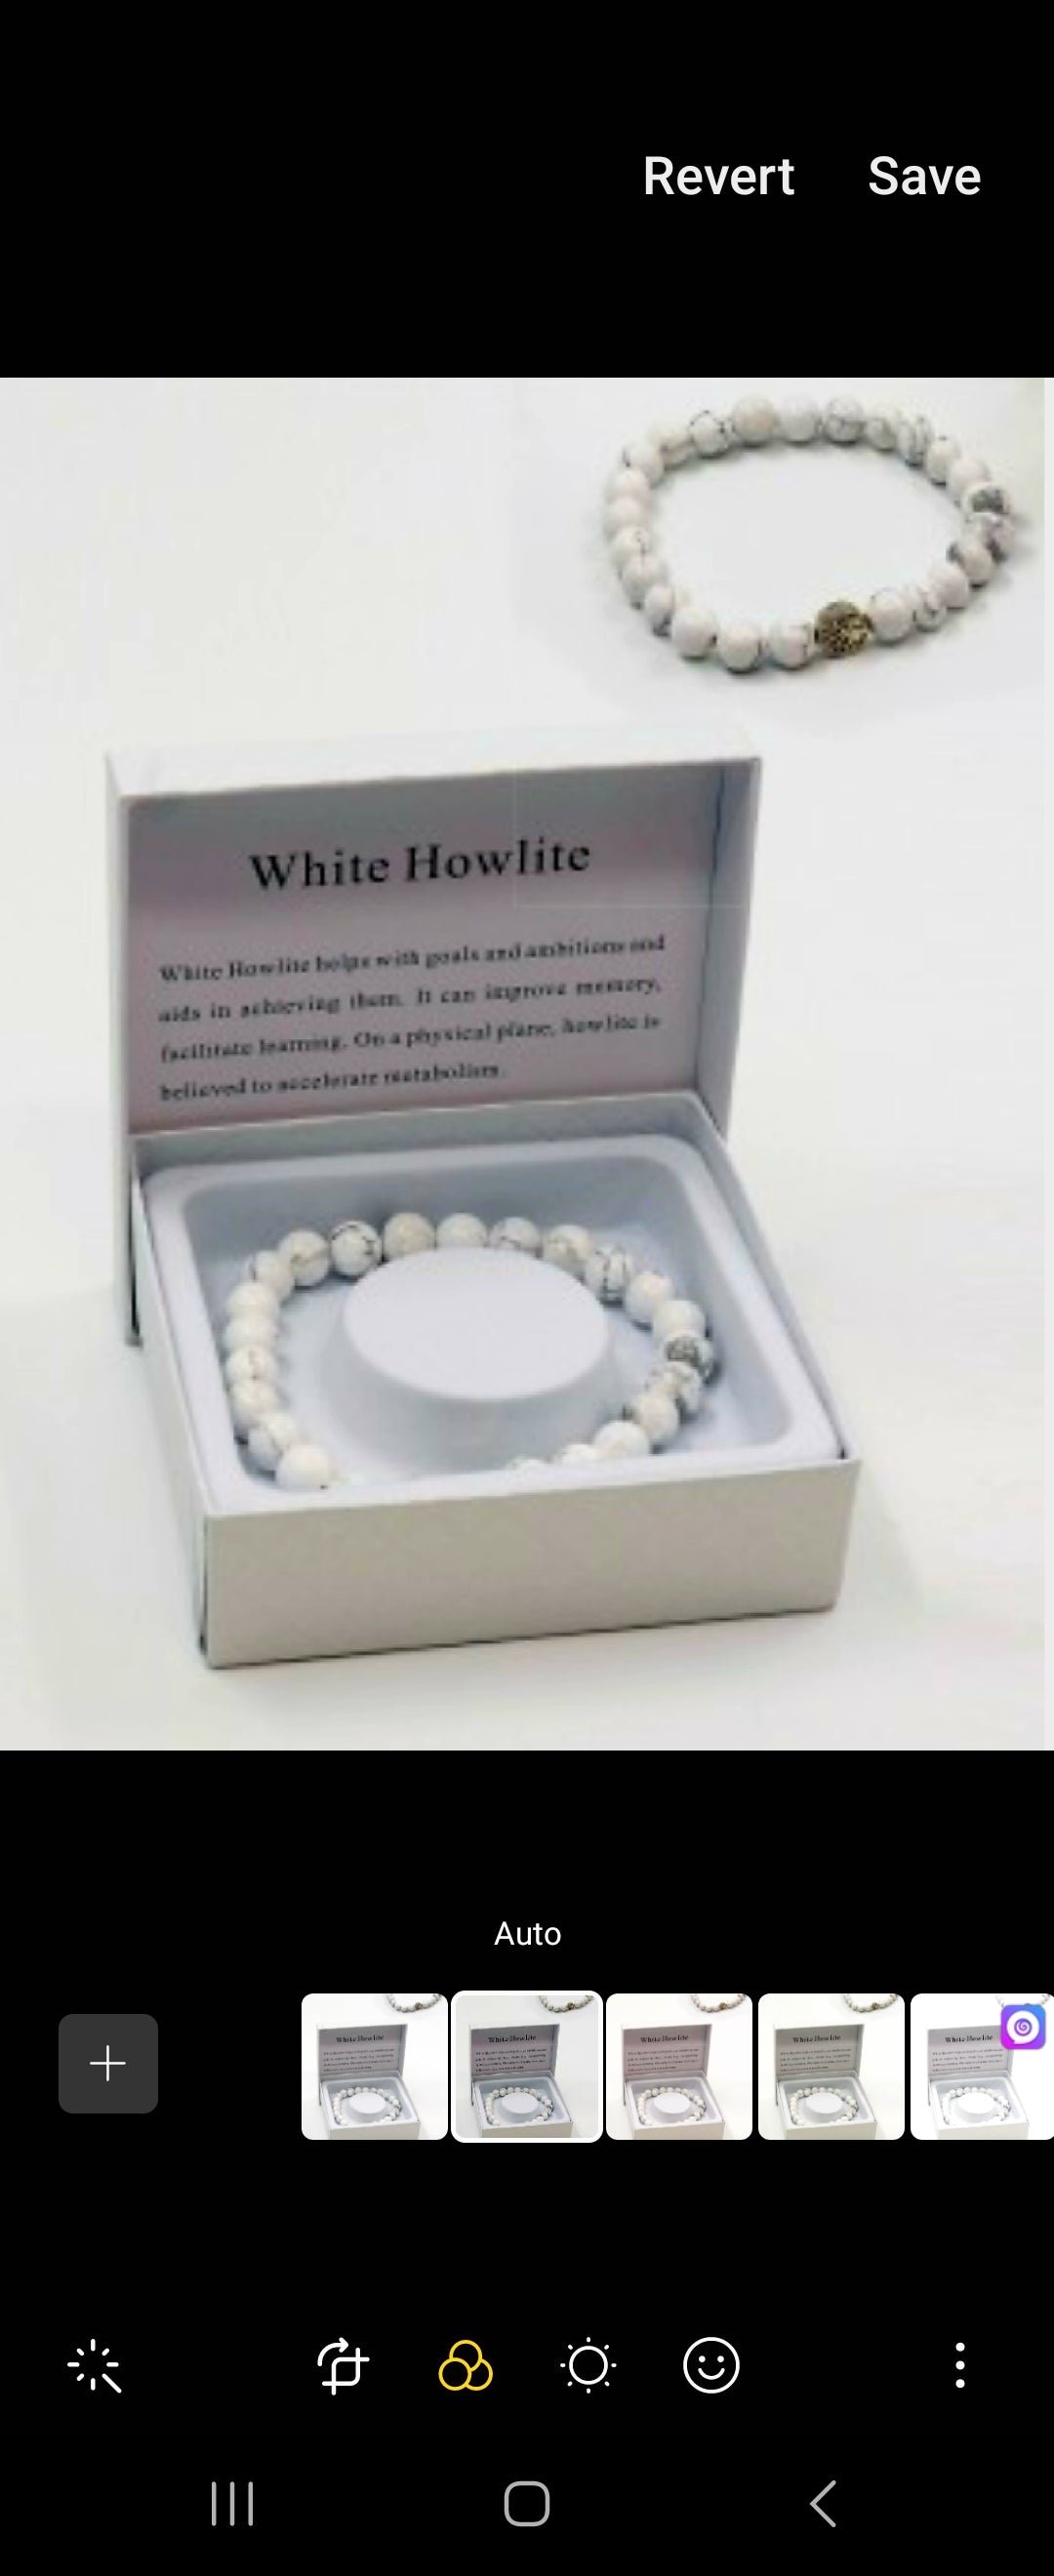 White Howlite Blessing Bead Bracelets